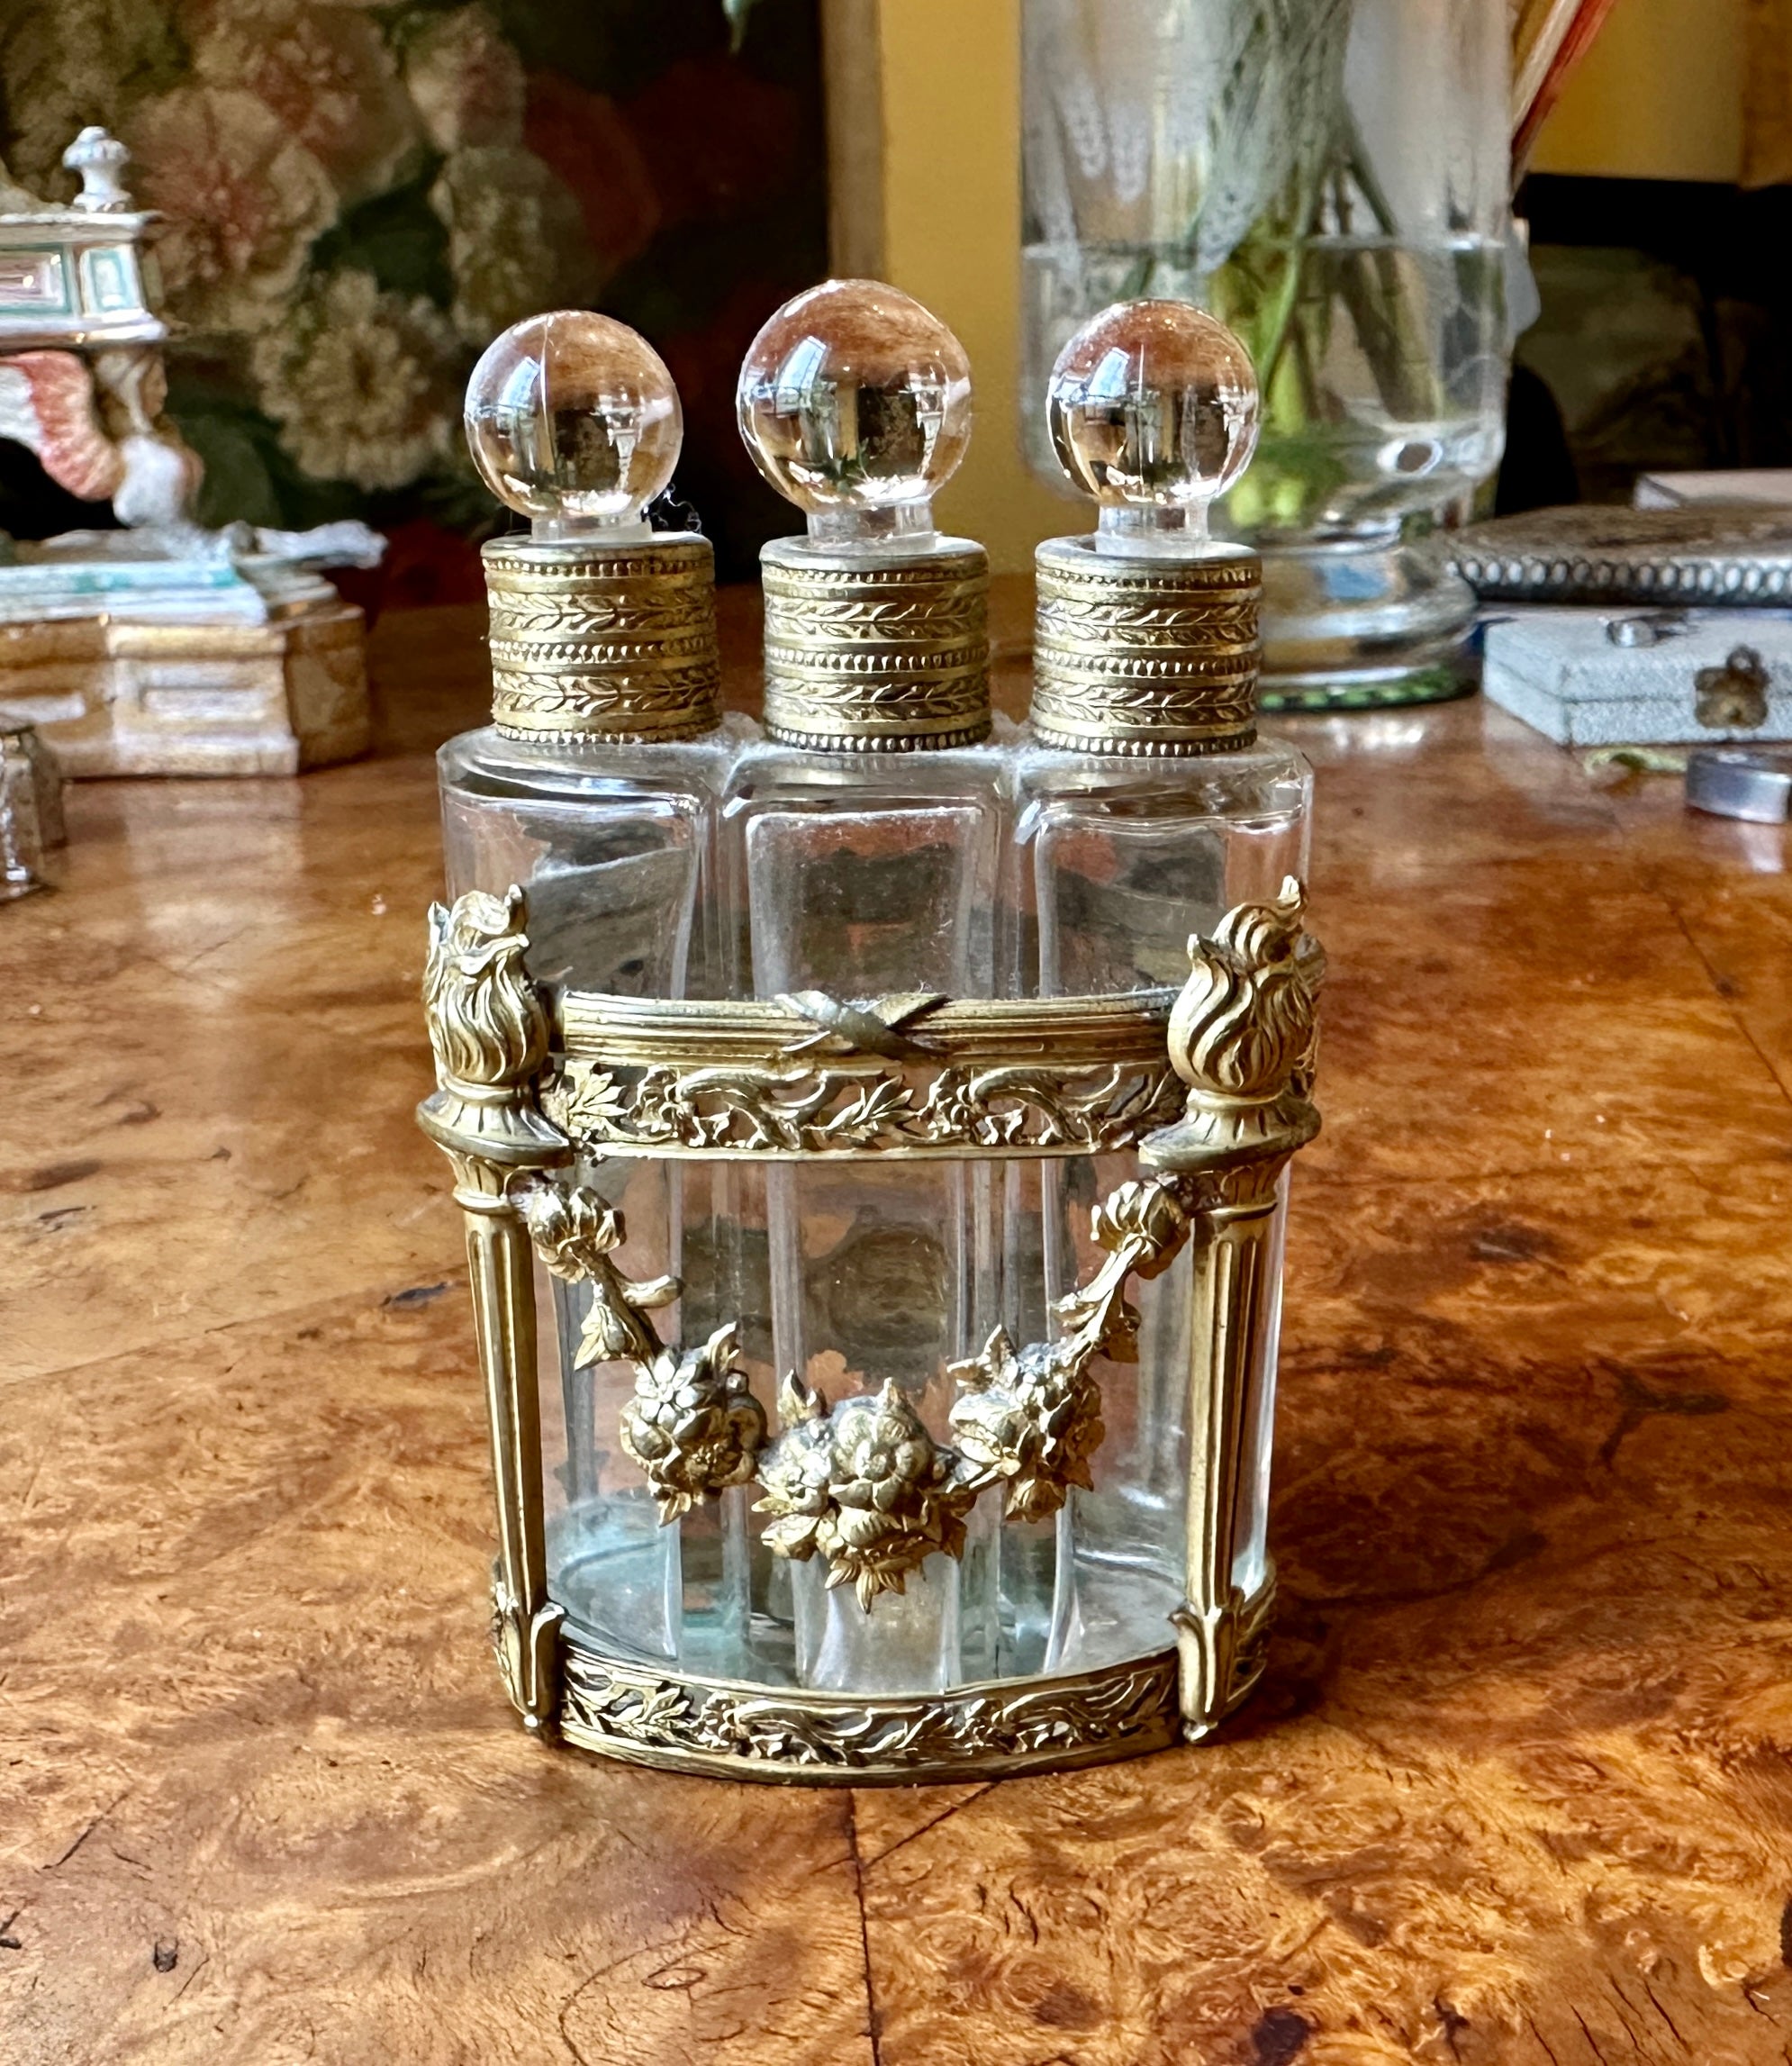 Il s'agit d'un magnifique ensemble de trois flacons de parfum en bronze Dore datant d'environ 1860-1890.  L'ensemble est composé d'un chariot trouvé en bronze doré et moulé et de trois flacons en verre avec bouchons ronds. Le chariot représente une